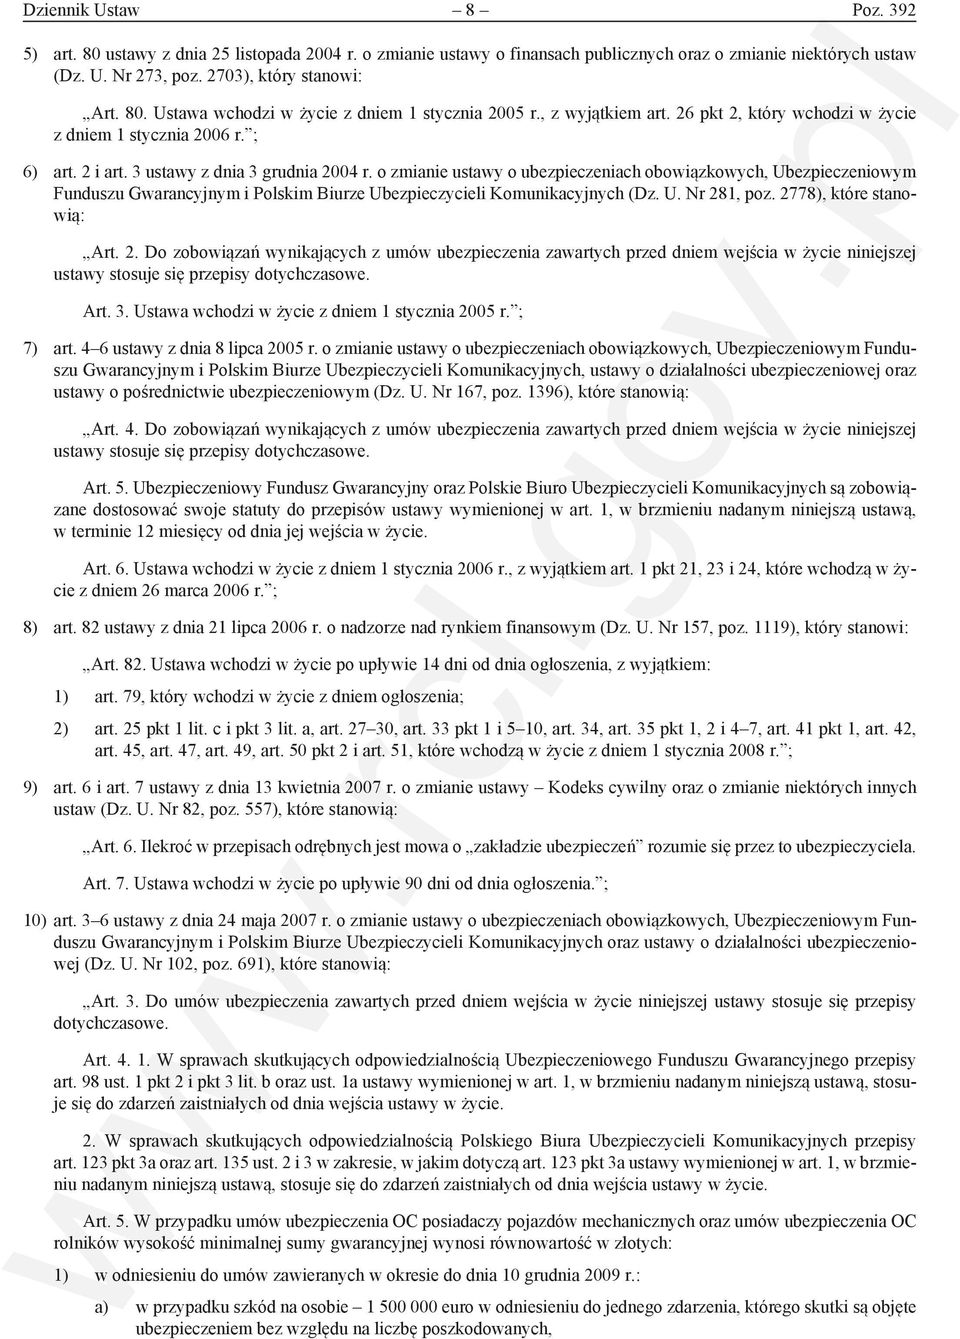 o zmianie ustawy o ubezpieczeniach obowiązkowych, Ubezpieczeniowym Funduszu Gwarancyjnym i Polskim Biurze Ubezpieczycieli Komunikacyjnych (Dz. U. Nr 28